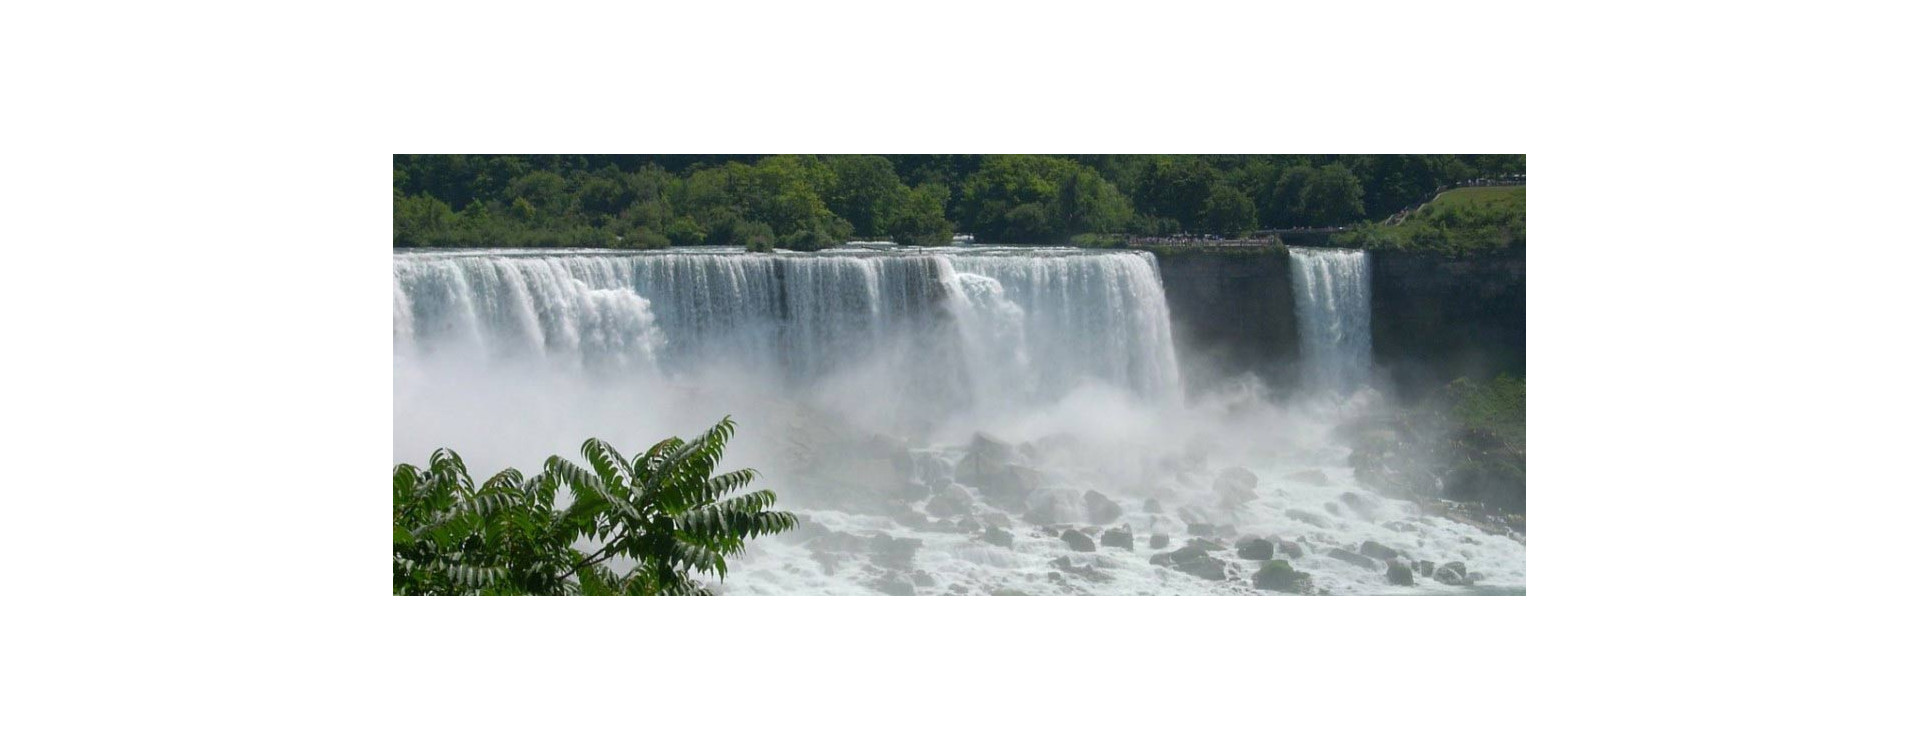 Comment faire pour visiter les chutes du Niagara : Conseils et recommandations